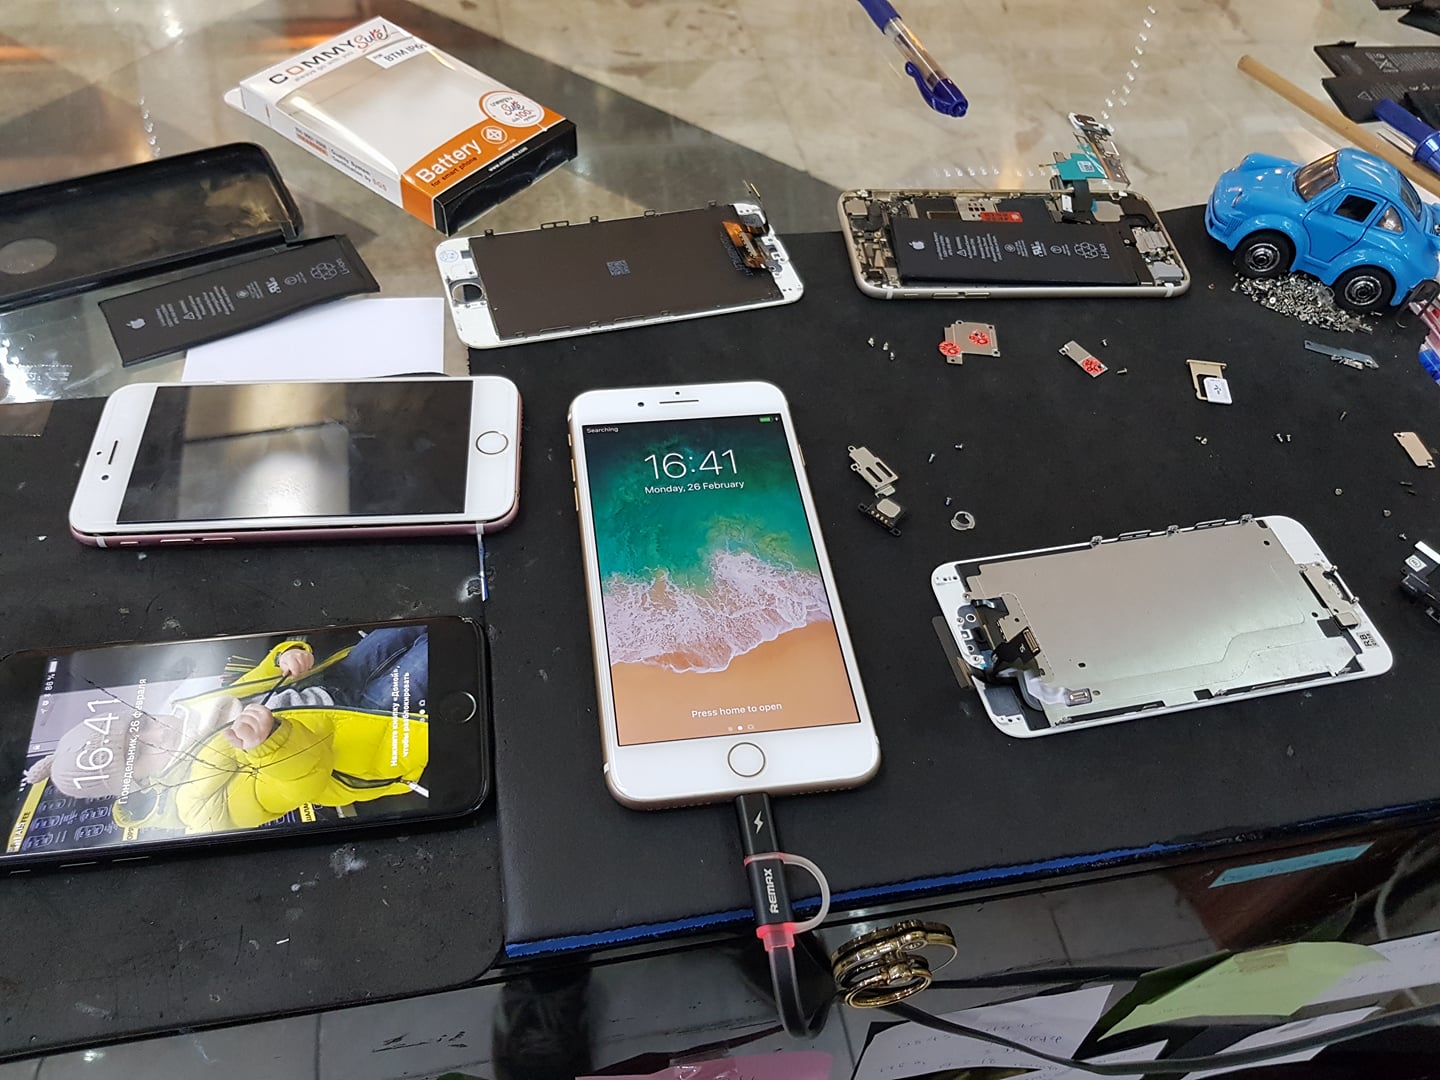 โทรศัพท์มือถือยี่ห้อ Apple แอปเปิ้ล มีอาการเสียอะไรบ้าง ซ่อมที่ไหนดี 🥇 ศูนย์ซ่อม โทรศัพท์มือถือ มือถือทุกรุ่น ทุกยี่ห้อ iPhone | Apple | Samsung | Huawei